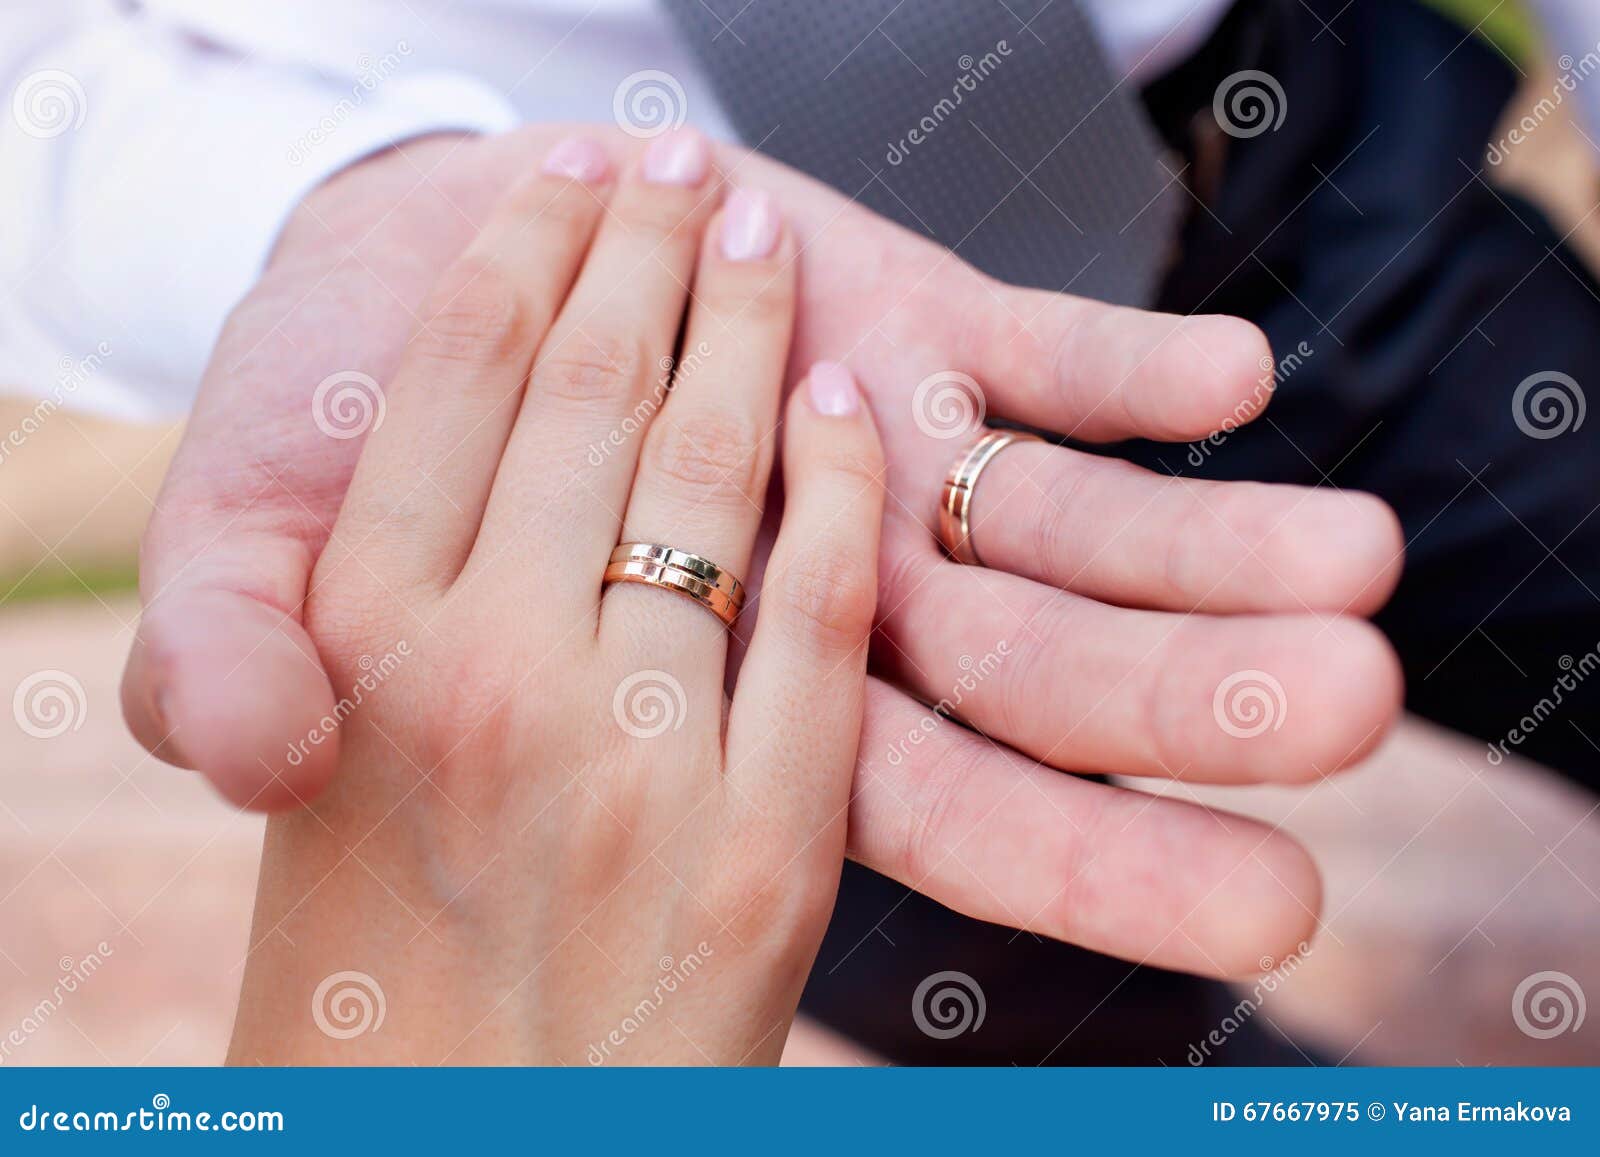 Мужа пальцем домашнее. Две руки с кольцами. Рука в руке с обручальными кольцами. Обручальные кольца на руках. Две руки с обручальными кольцами.